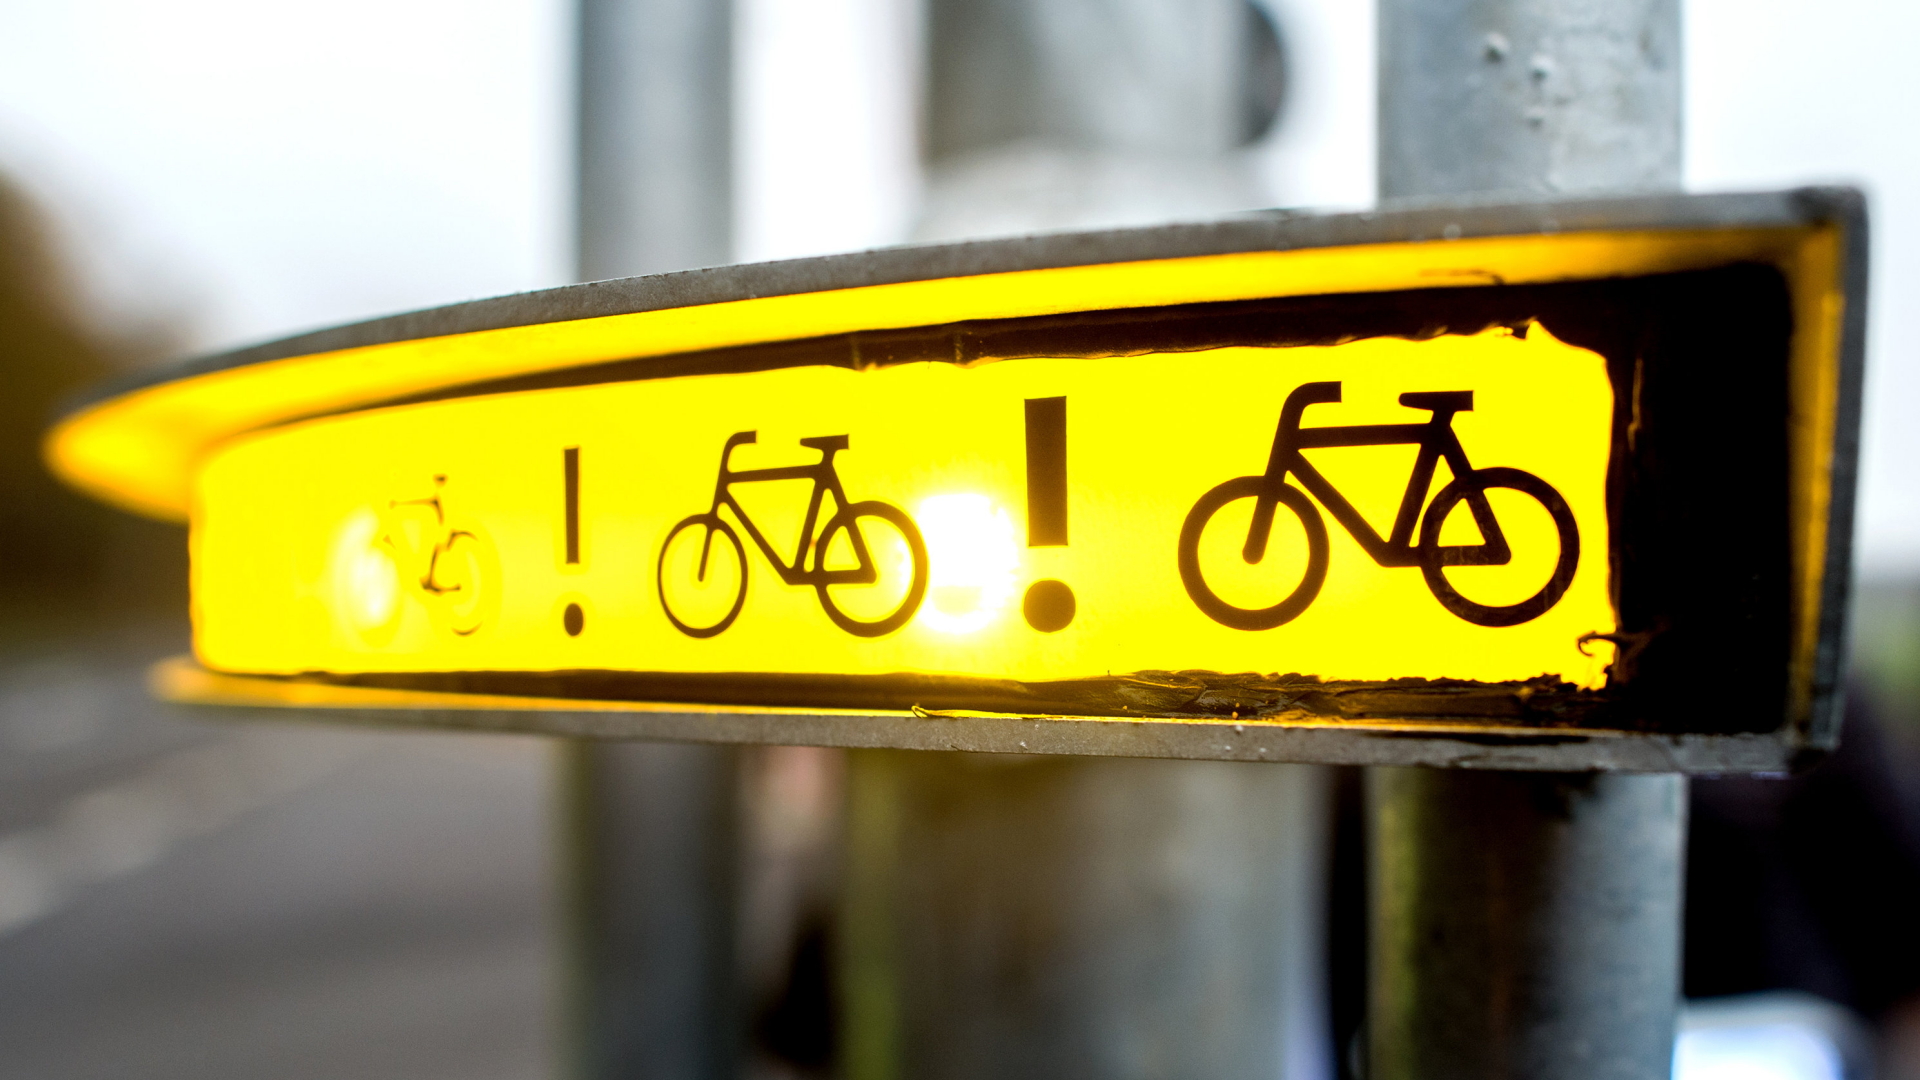 Ampel des neuen Radwarnsystems "Bike-Flash" | Bildquelle: dpa